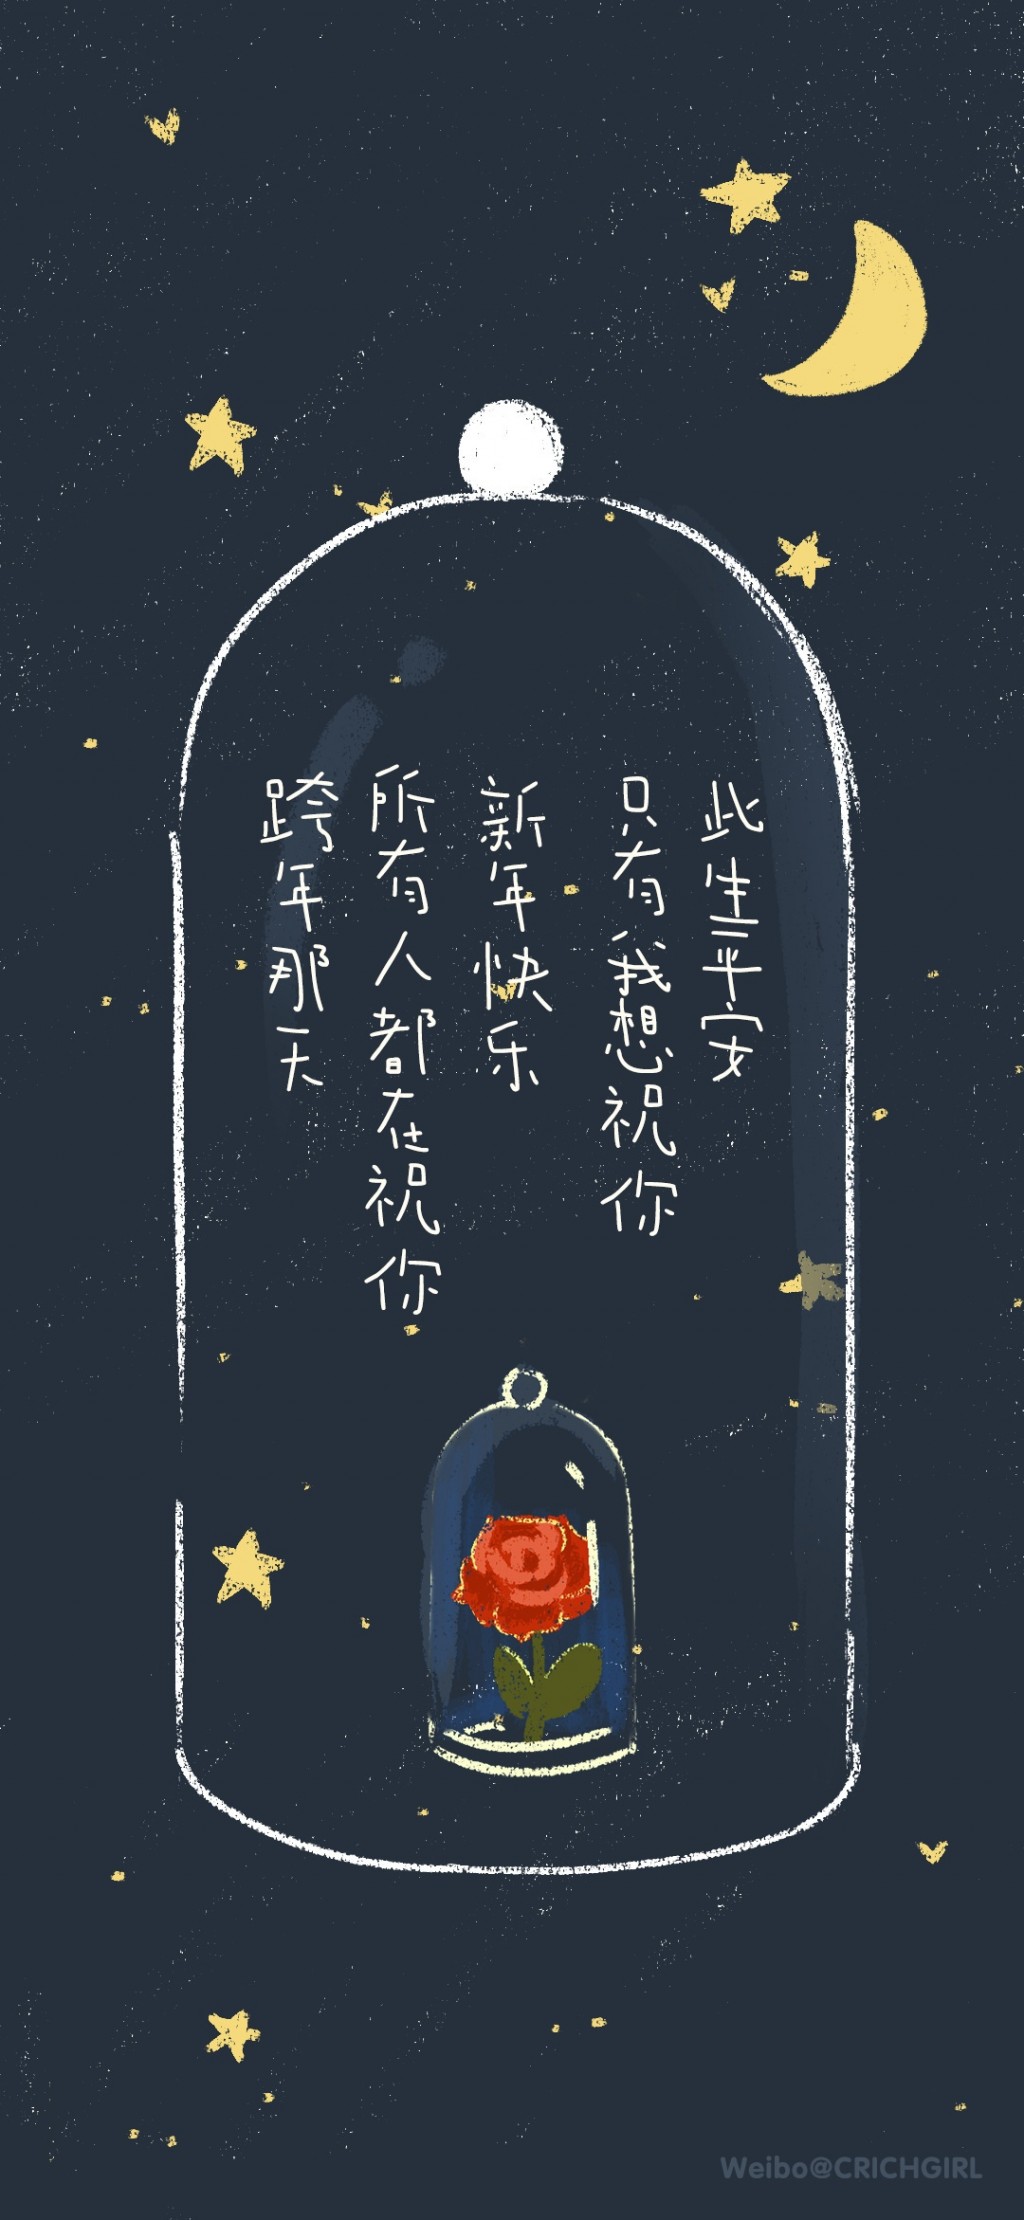 小王子系列励志文字手机壁纸